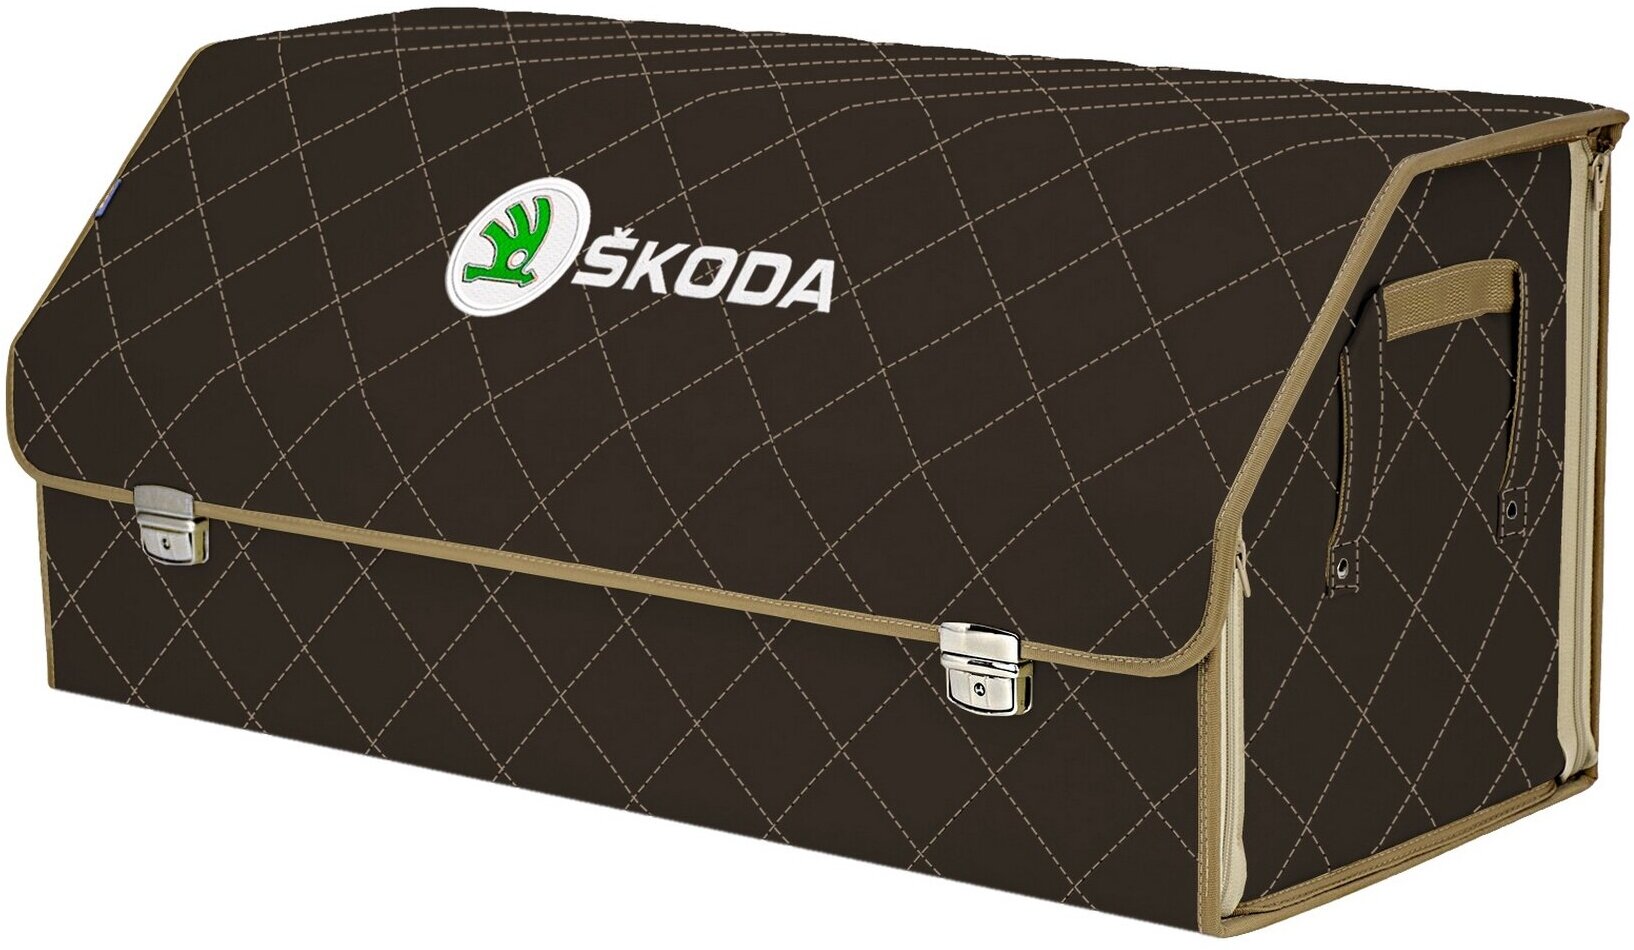 Органайзер-саквояж в багажник "Союз Премиум" (размер XXL). Цвет: коричневый с бежевой прострочкой Ромб и вышивкой Skoda (Шкода).